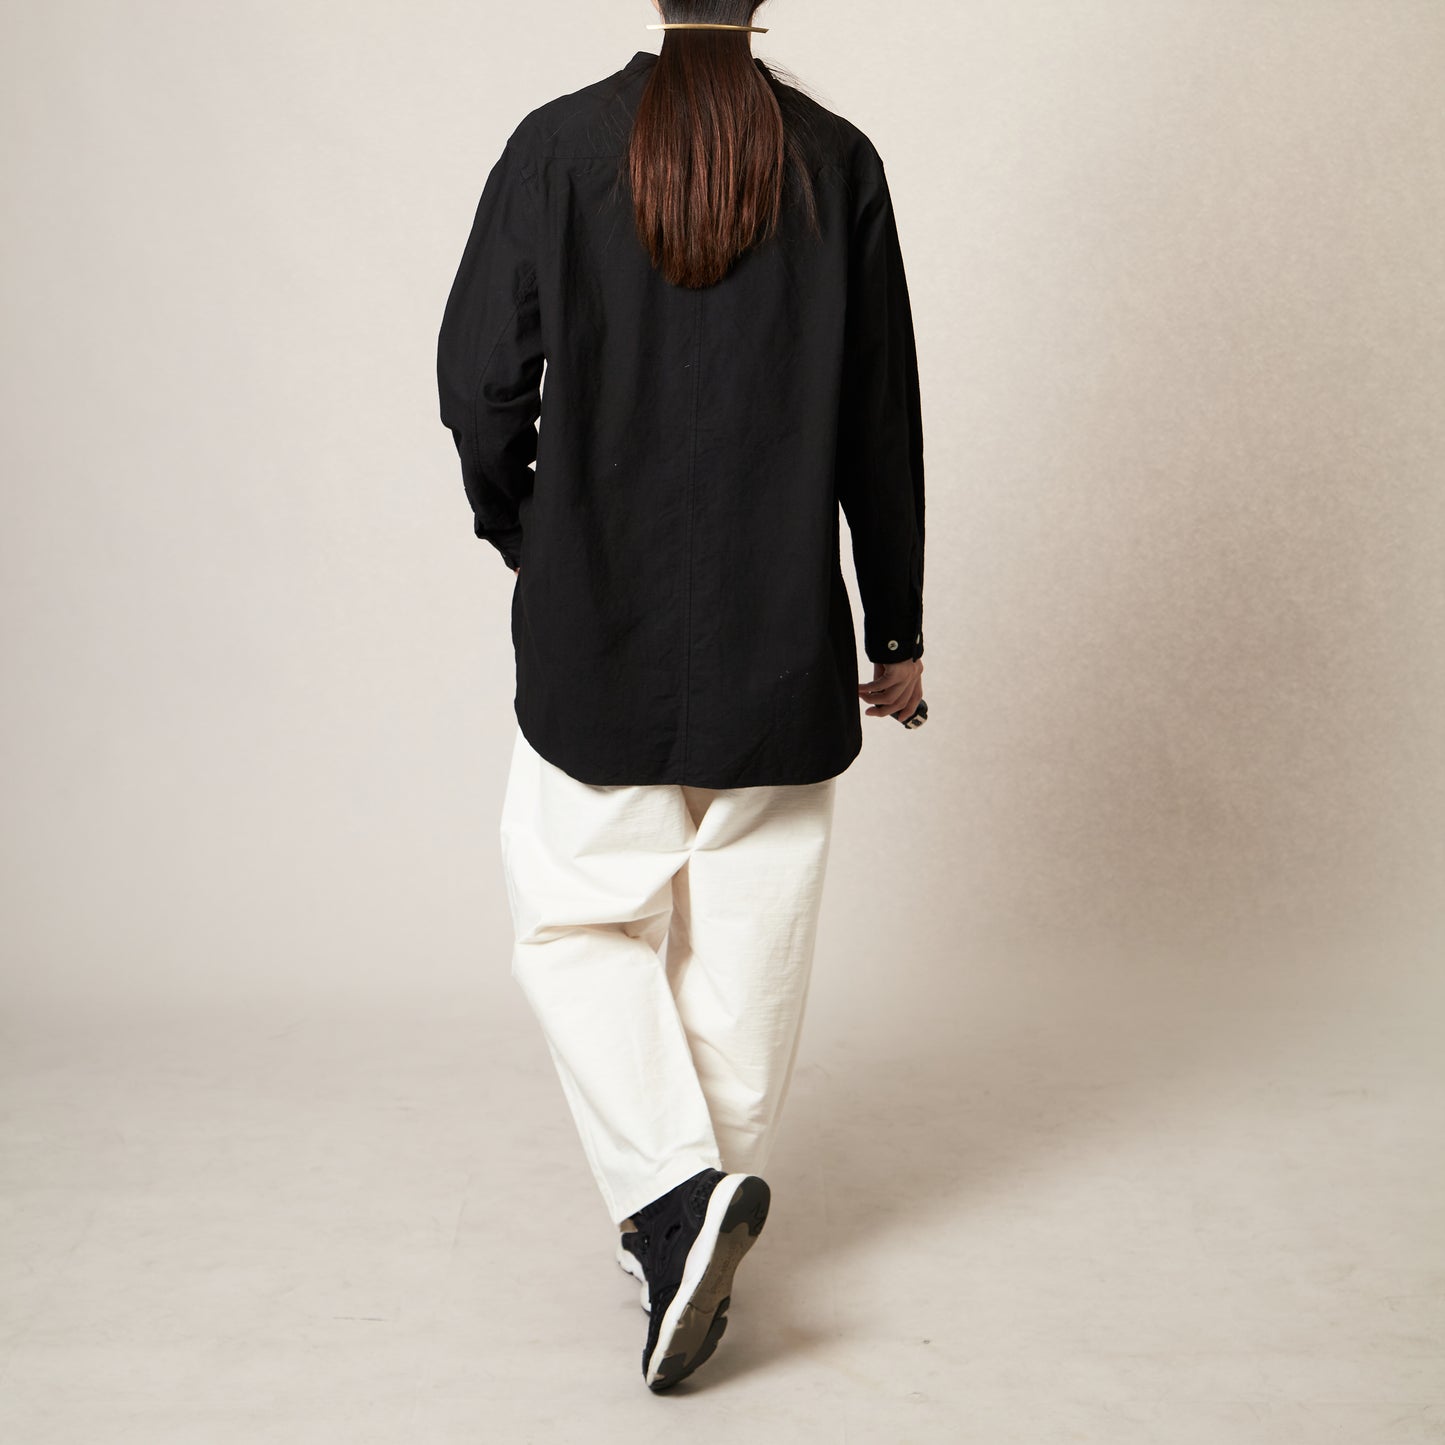 <OSOCU> 知多木綿 黒染め バンドカラーシャツ 愛知の素材と技術で作る「伝統を日常で愉しむシャツ」